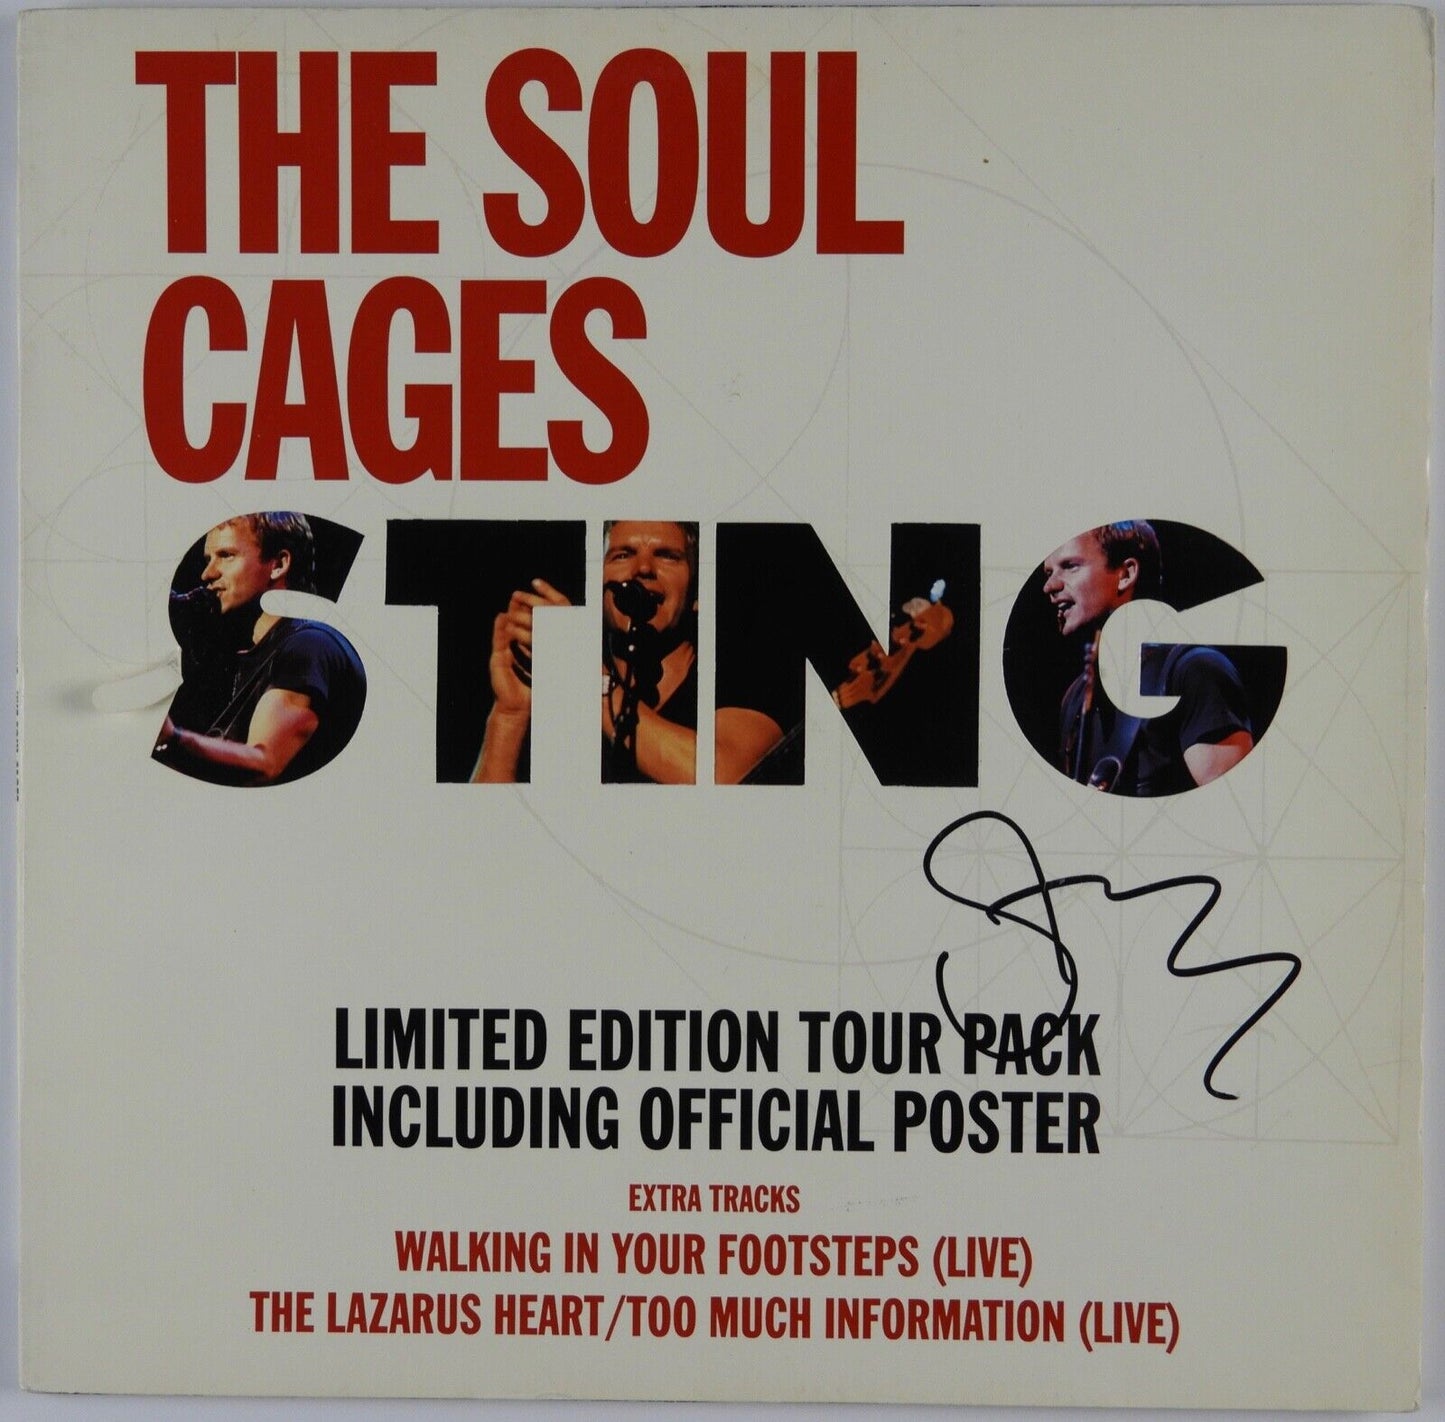 Sting Signed Autograph Record Album JSA Vinyl The Soul Cages